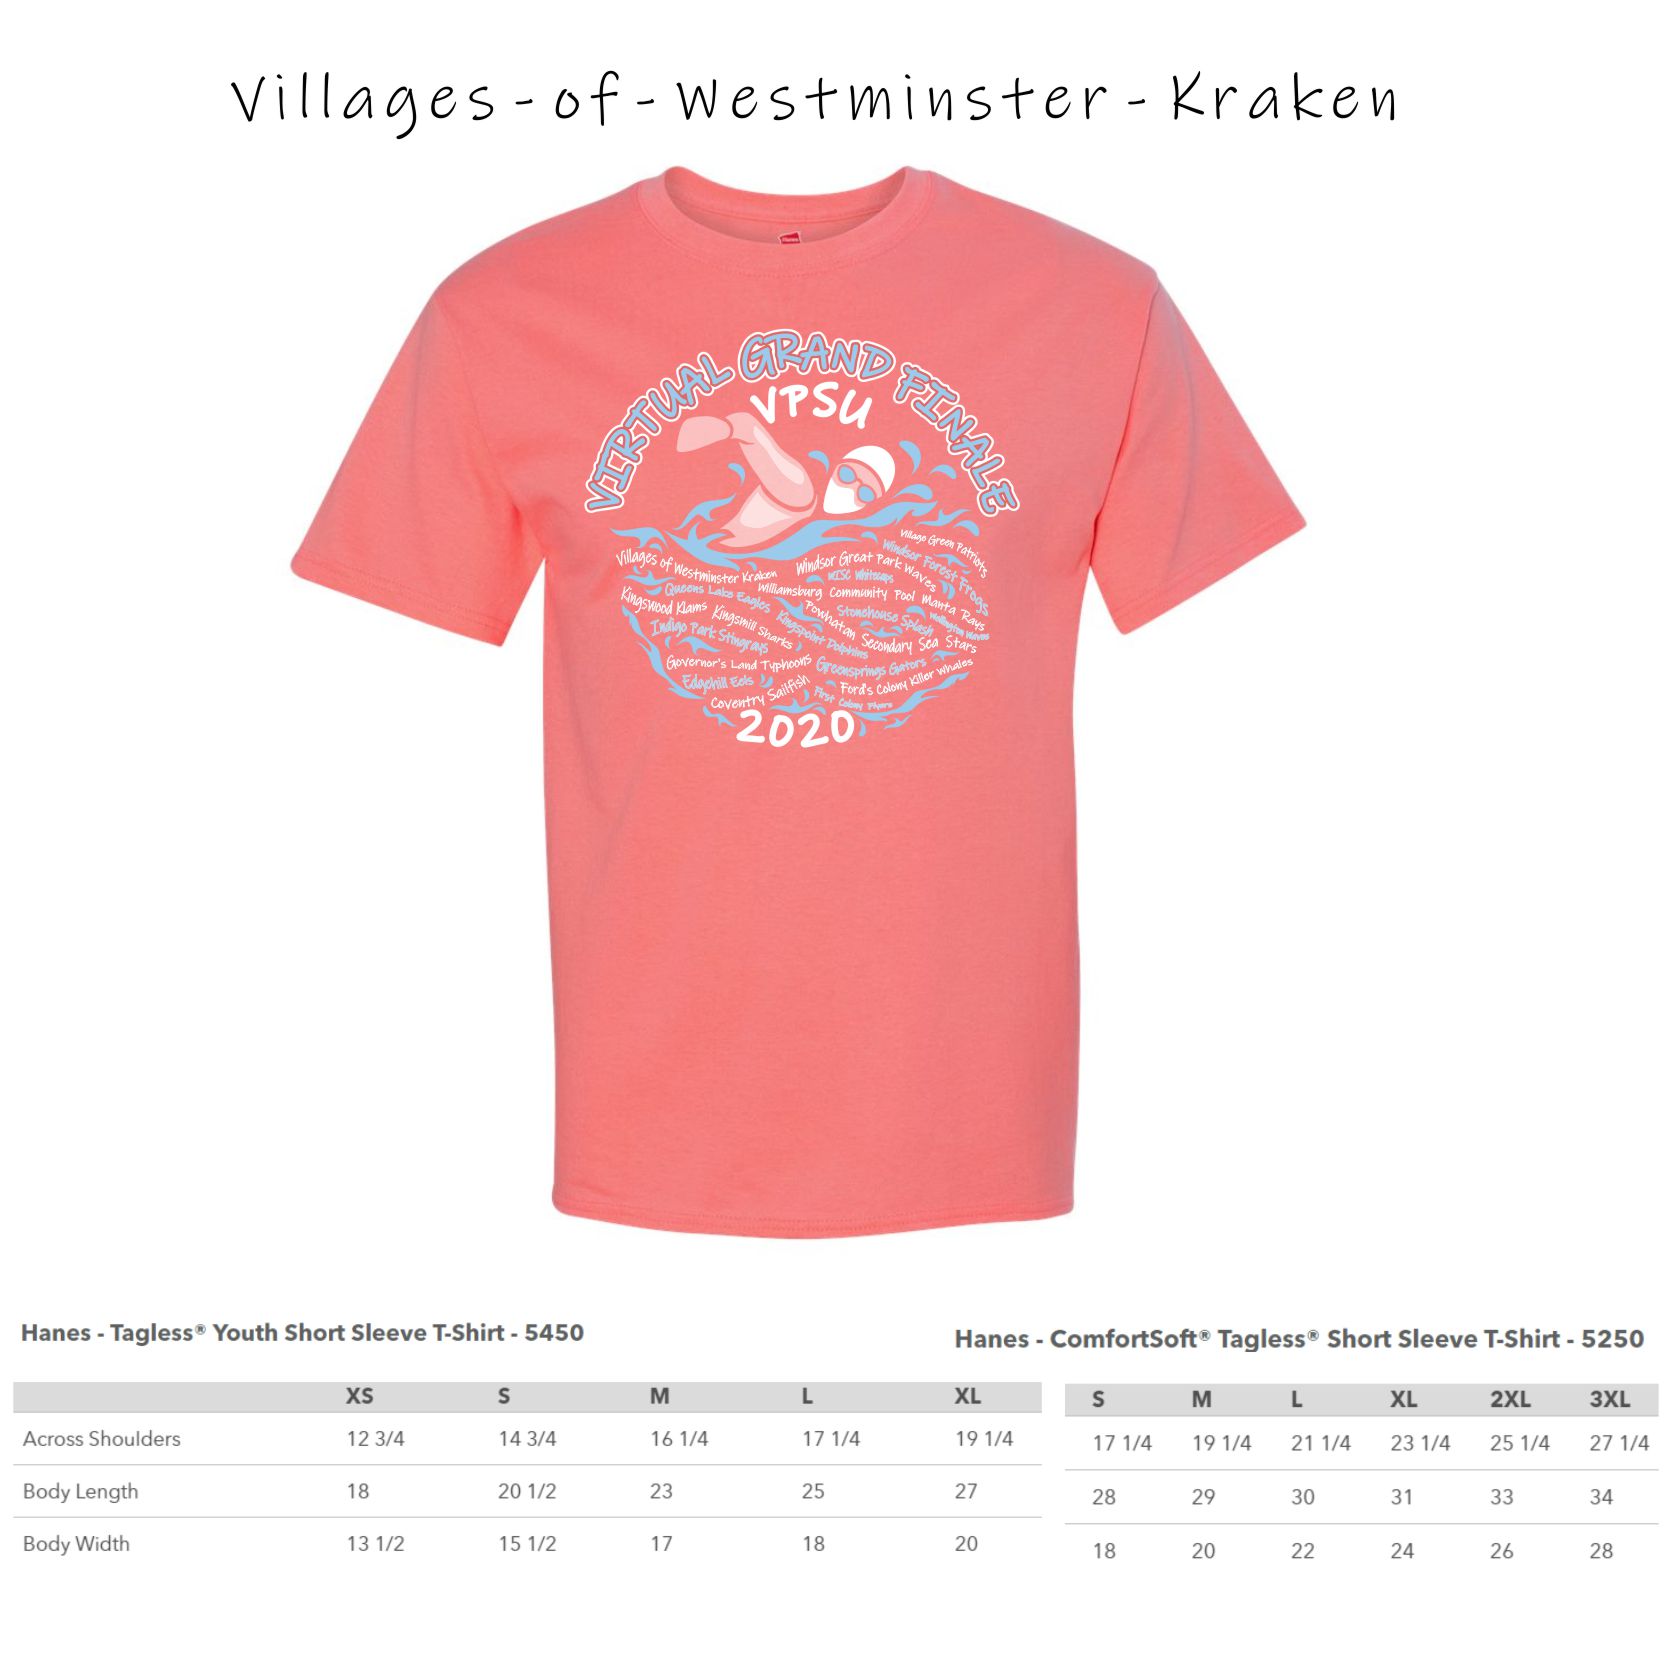 1 - Villages of Westminster Kraken